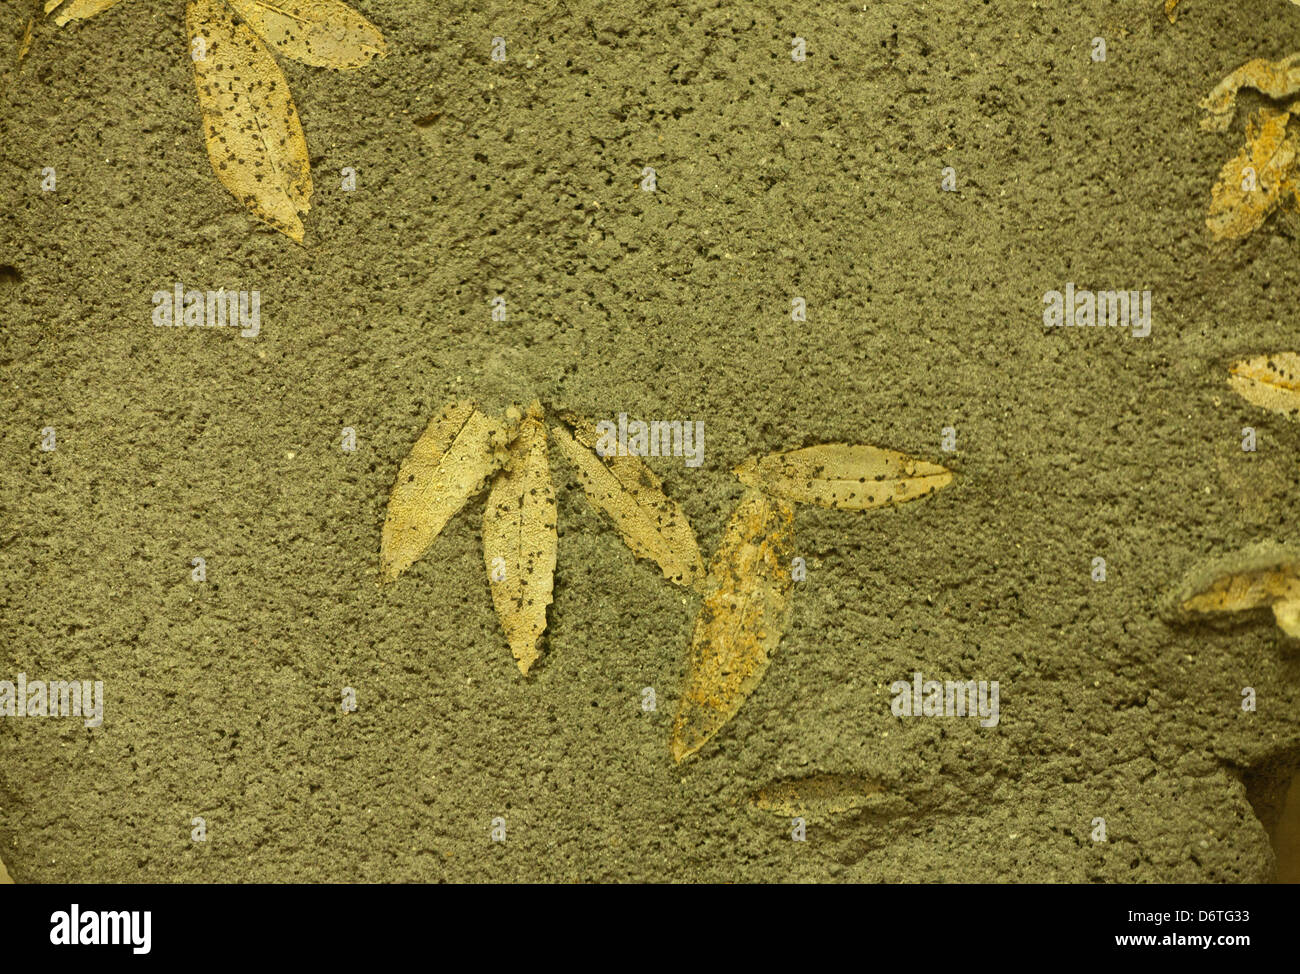 Las hojas de olivo fosilizadas de 60.000 A.C. encontrado en Santorini, Cícladas, Mar Egeo, Grecia Foto de stock